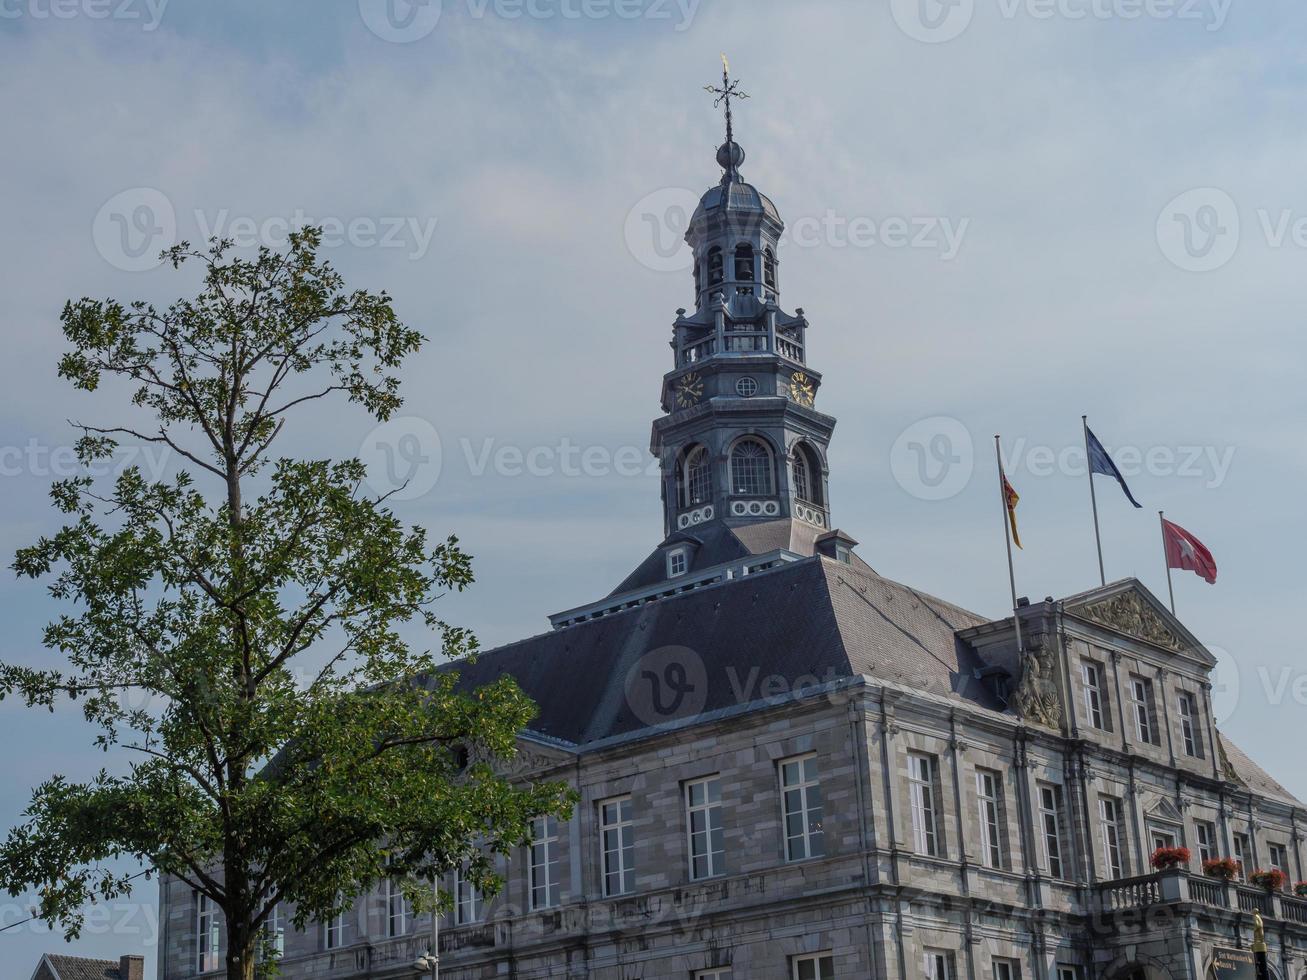 de stad maastricht aan de maas in nederland foto